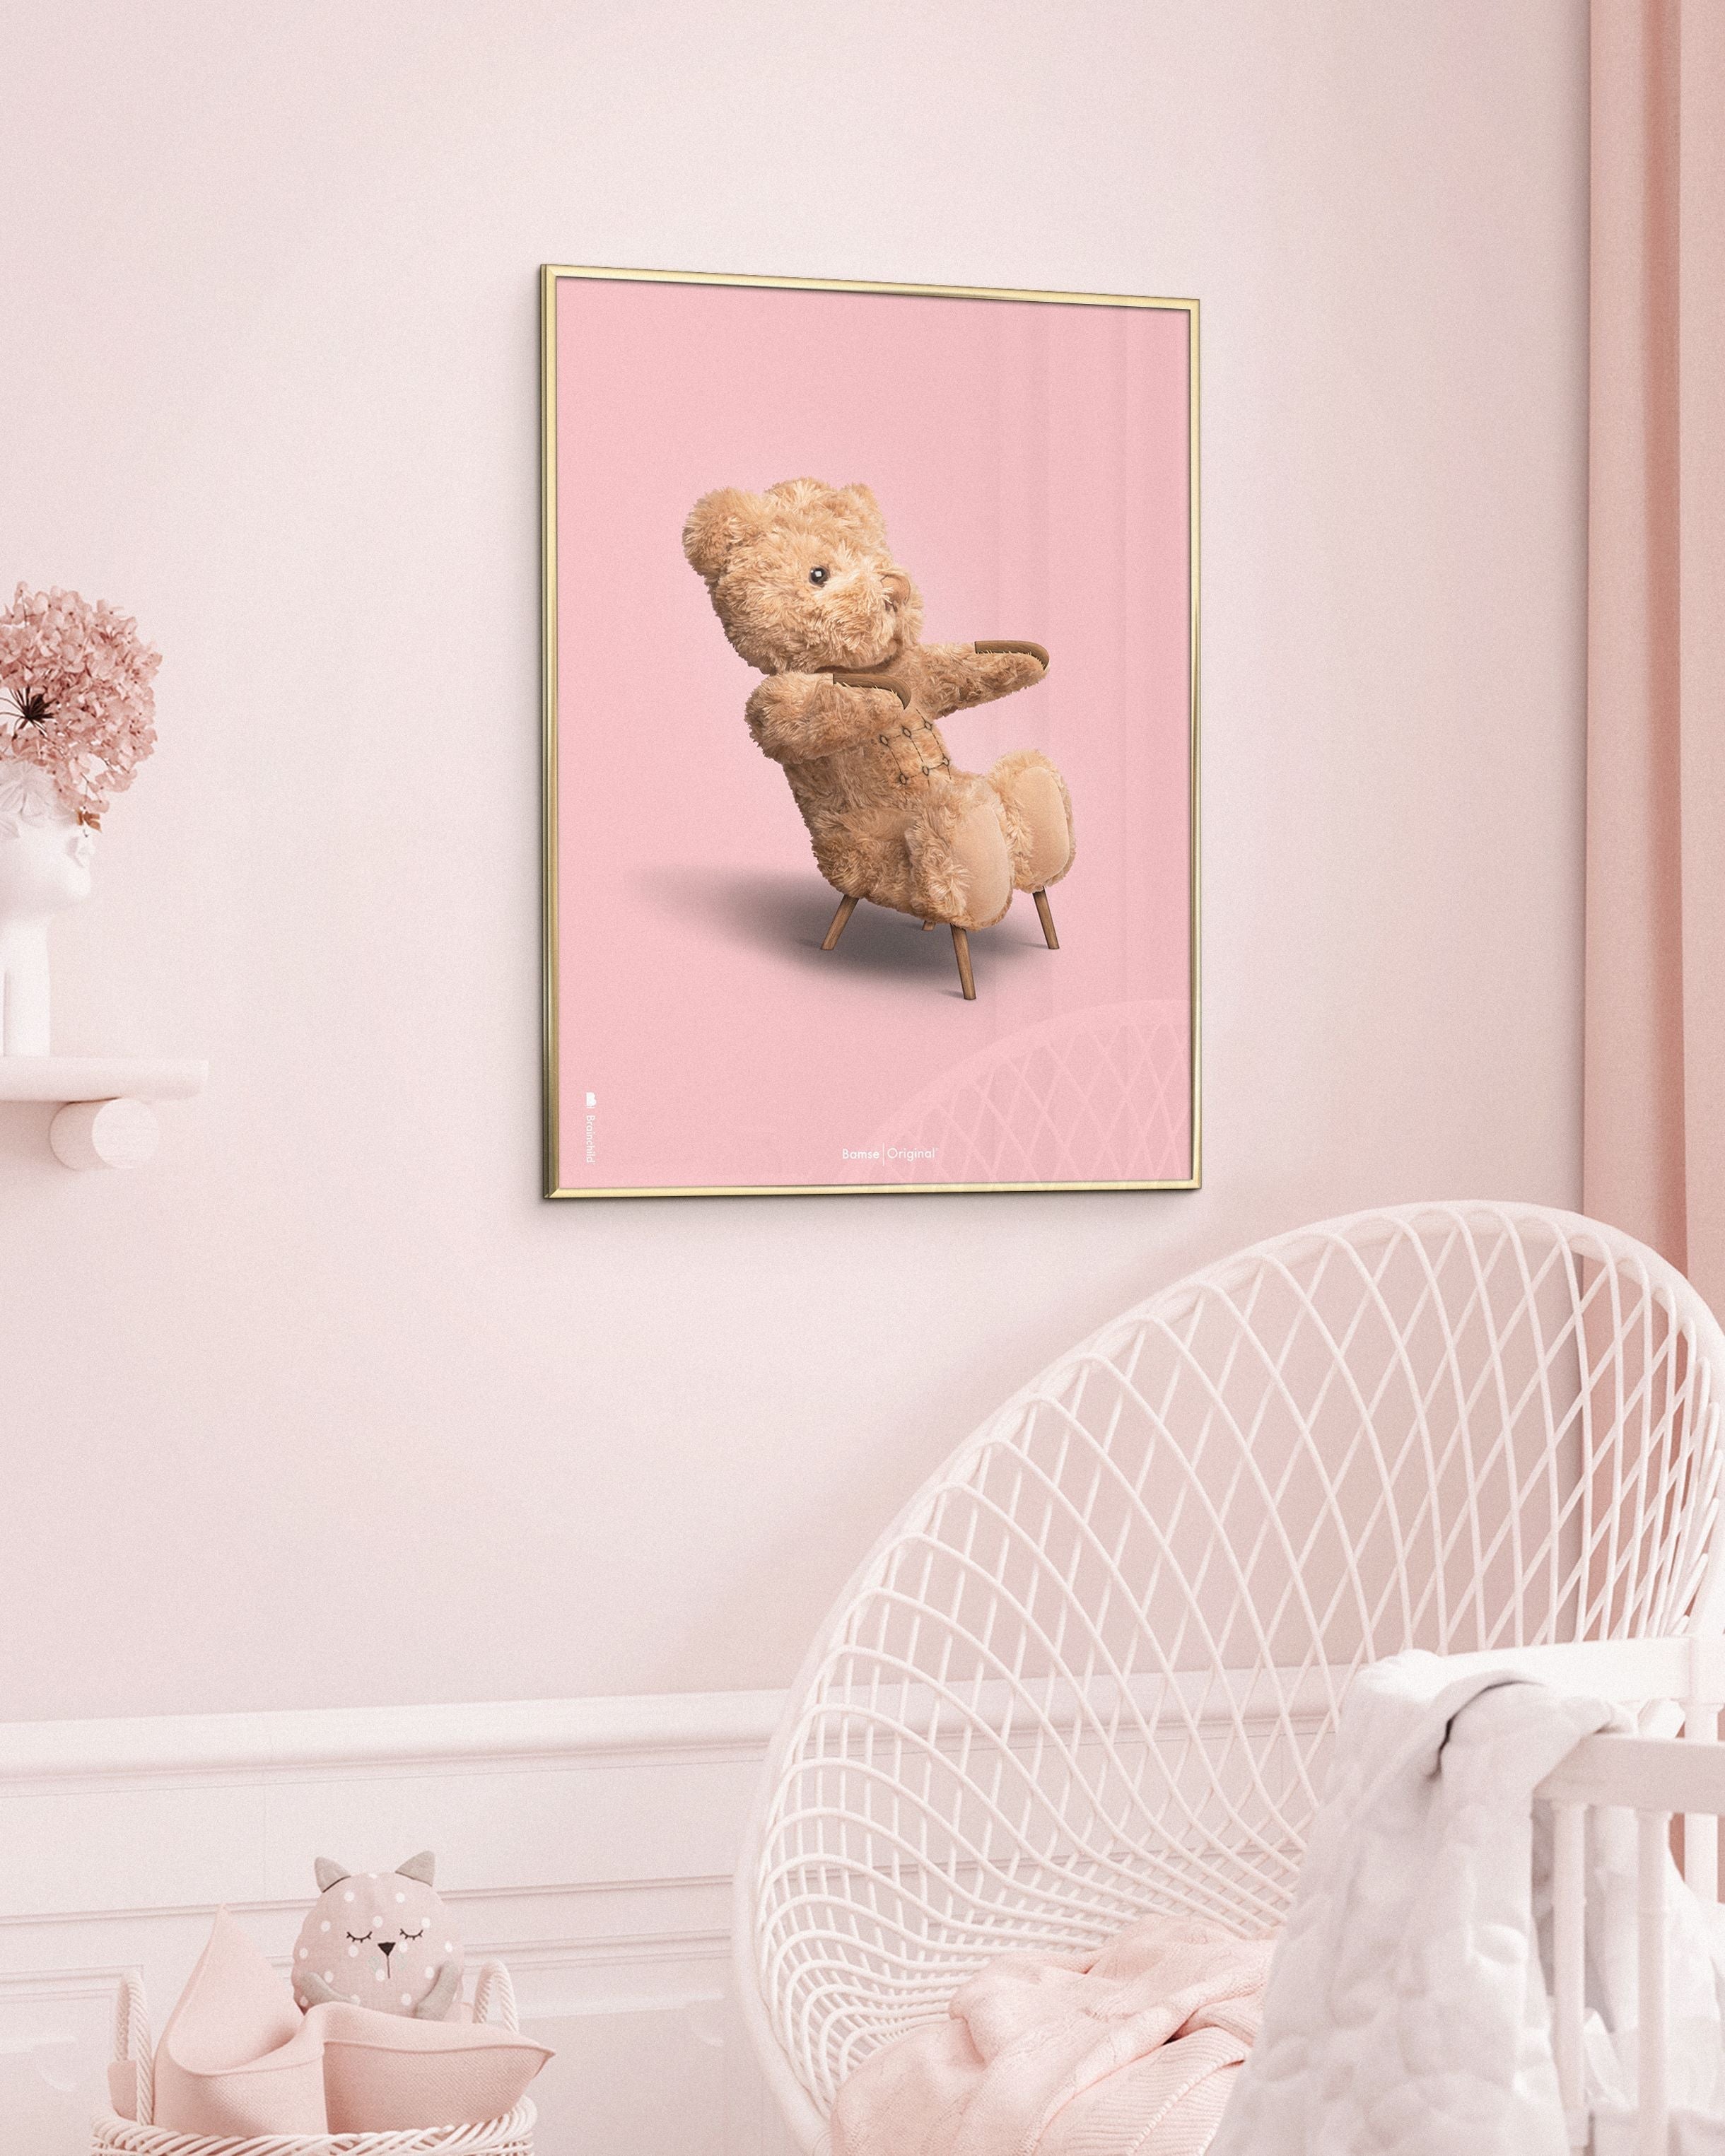 Brainchild Teddy Bear Classic Poster uden ramme 70x100 cm, lyserød baggrund